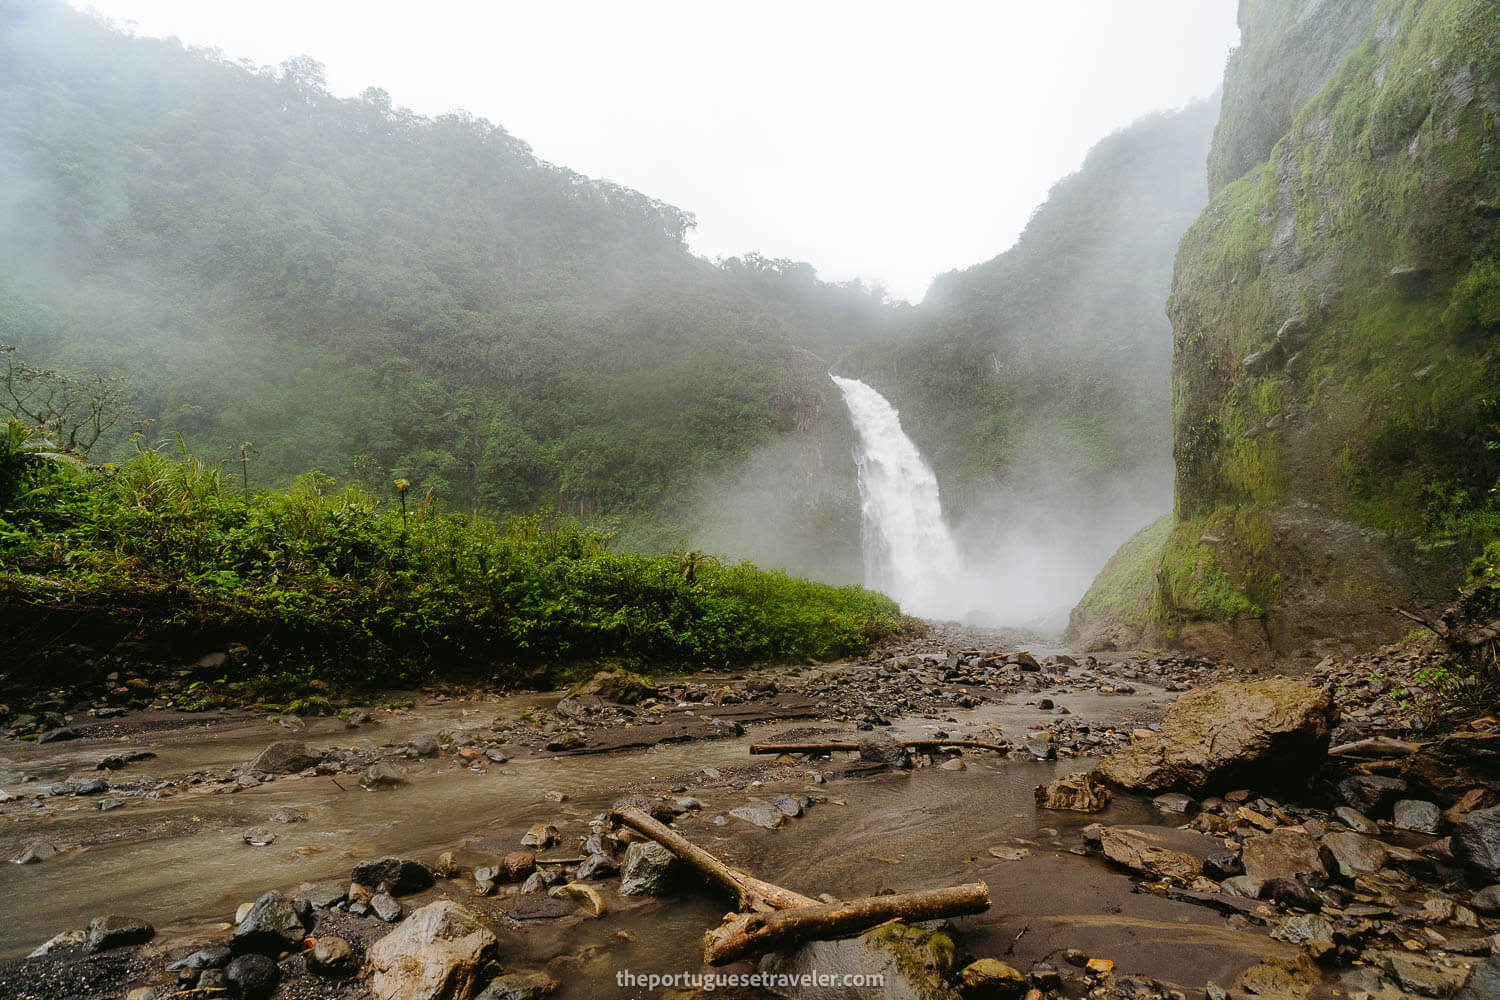 The first glimpse of the Cascada Magica del Rio Malo Waterfall